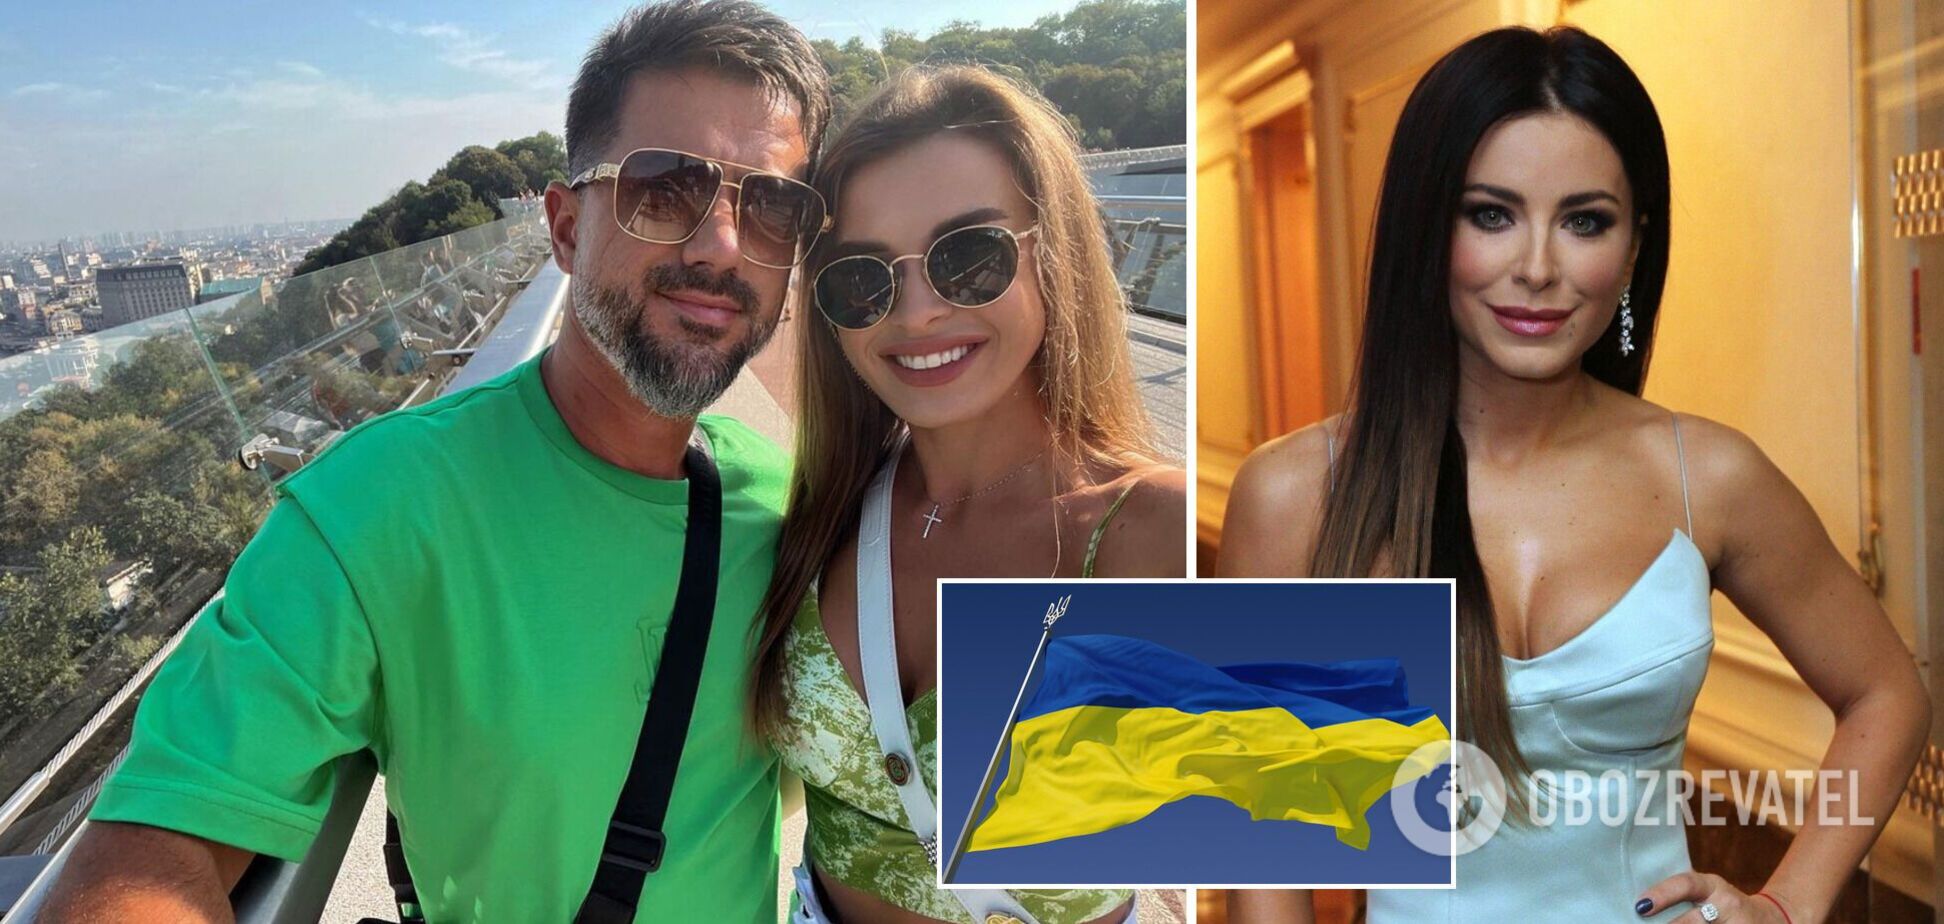 Колишній чоловік зрадниці Ані Лорак приїхав до Києва з новою обраницею і назвав Україну своїм домом